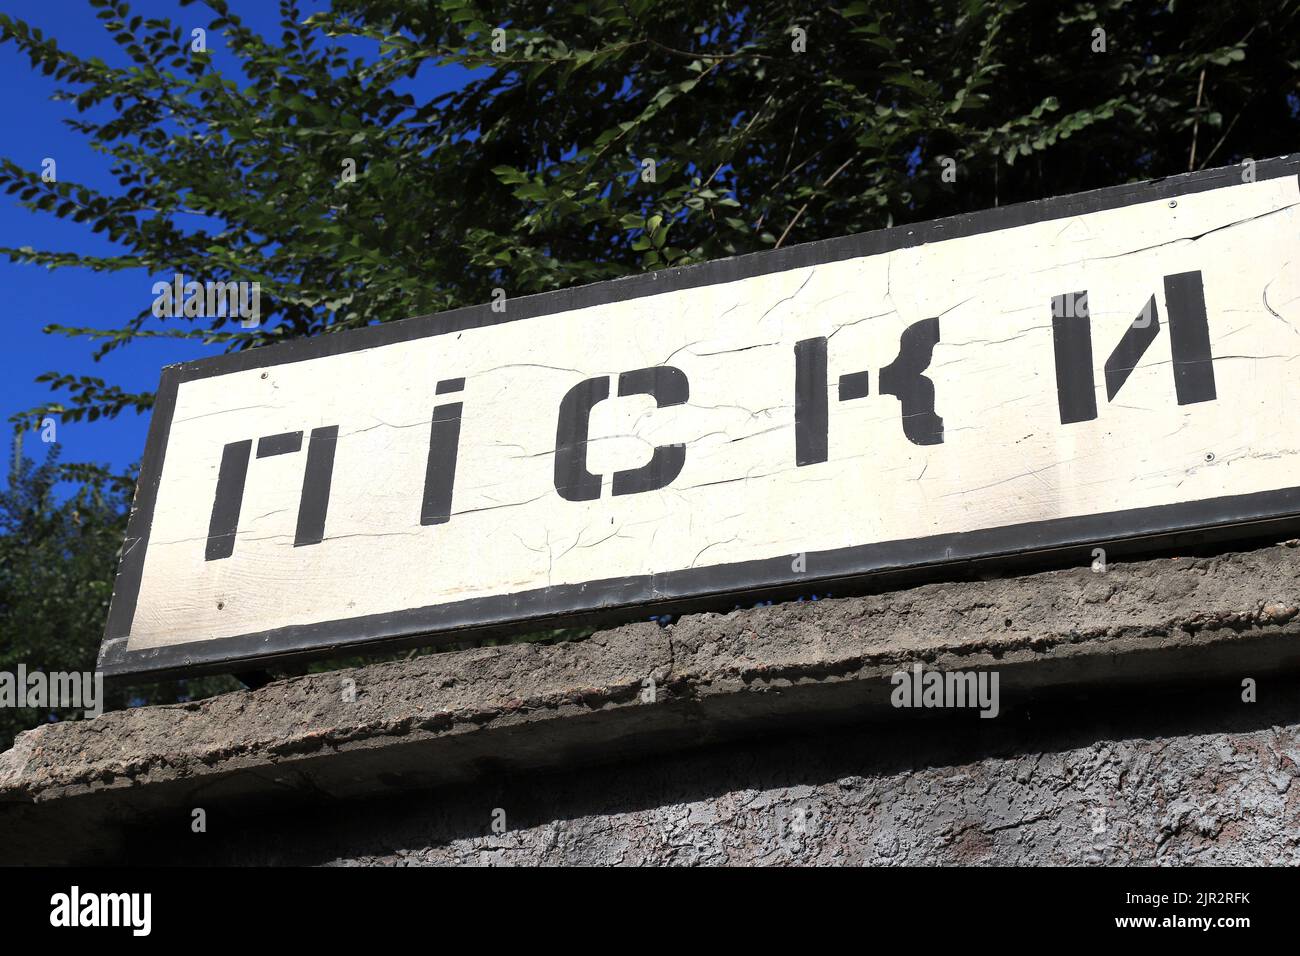 Straßenschild mit Inschrift in ukrainischer Sprache - Pisky. Donezk Region, Ukrainischer Krieg in Sands, Donbass. Ukraine Russland Krieg Stockfoto